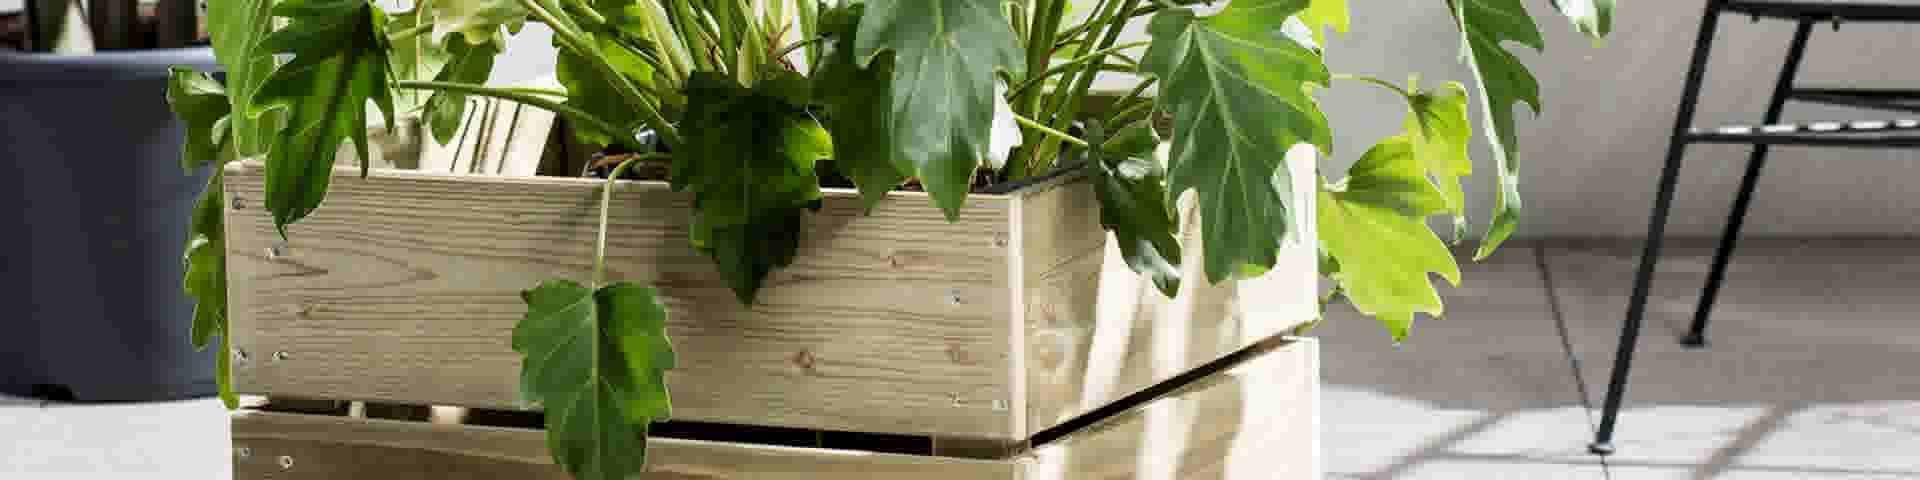 ziekte materiaal lenen Met hout maak je zelf een mooie plantenbak of bloembak: bekijk ons  stappenplan | GAMMA